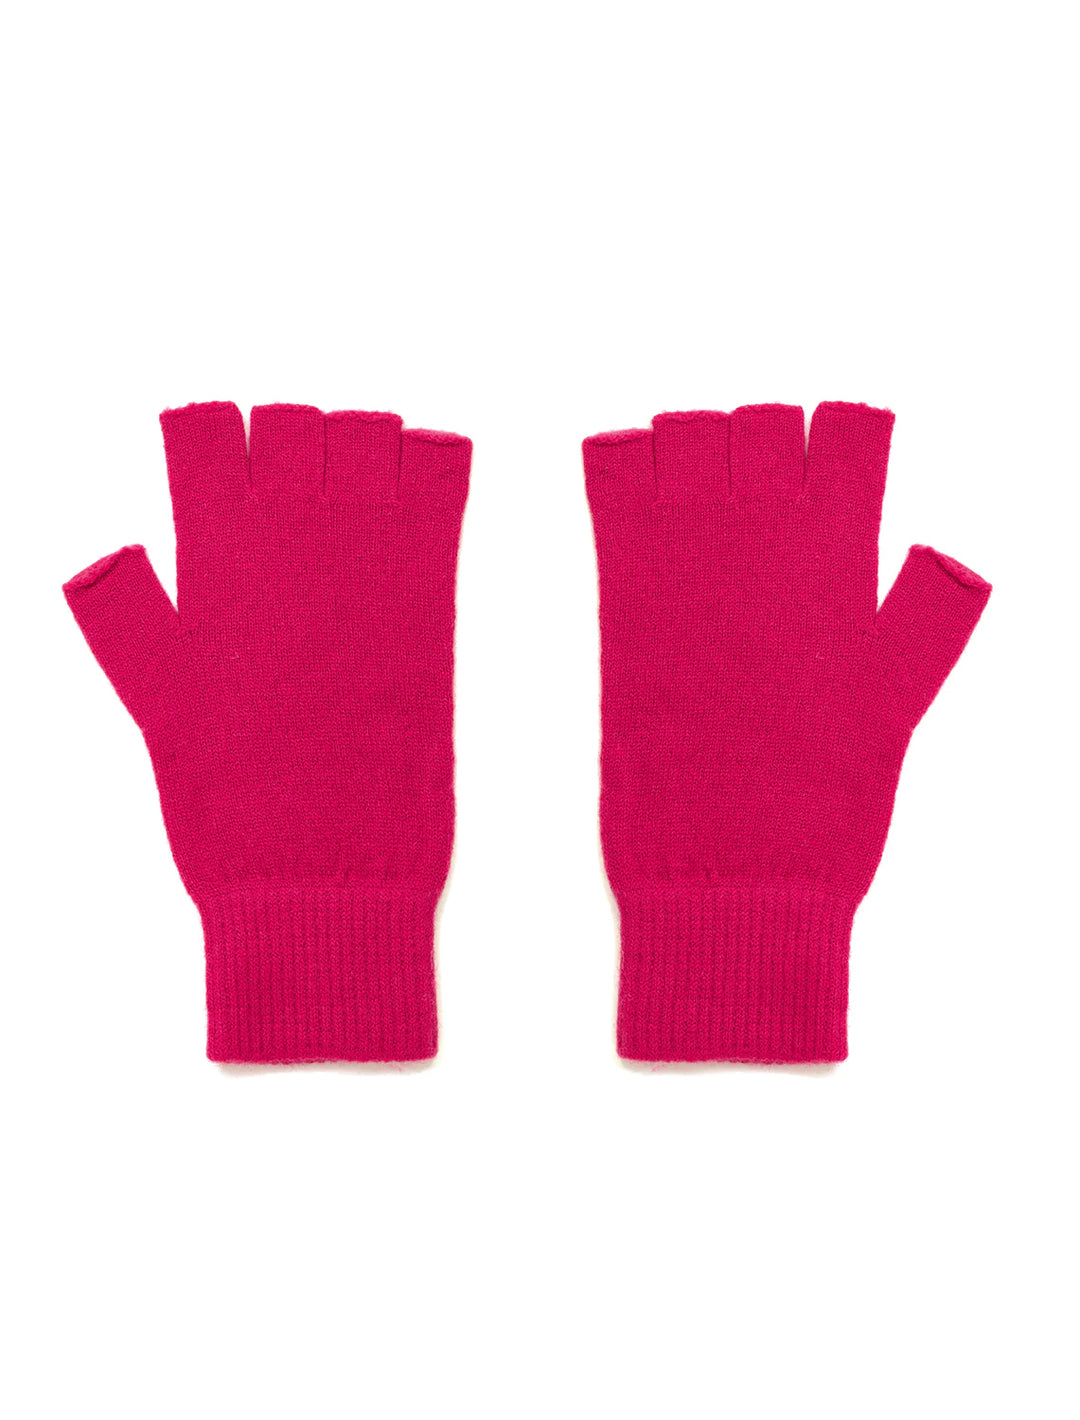 Jumper 1234's Fingerless Gloves in Cherry.